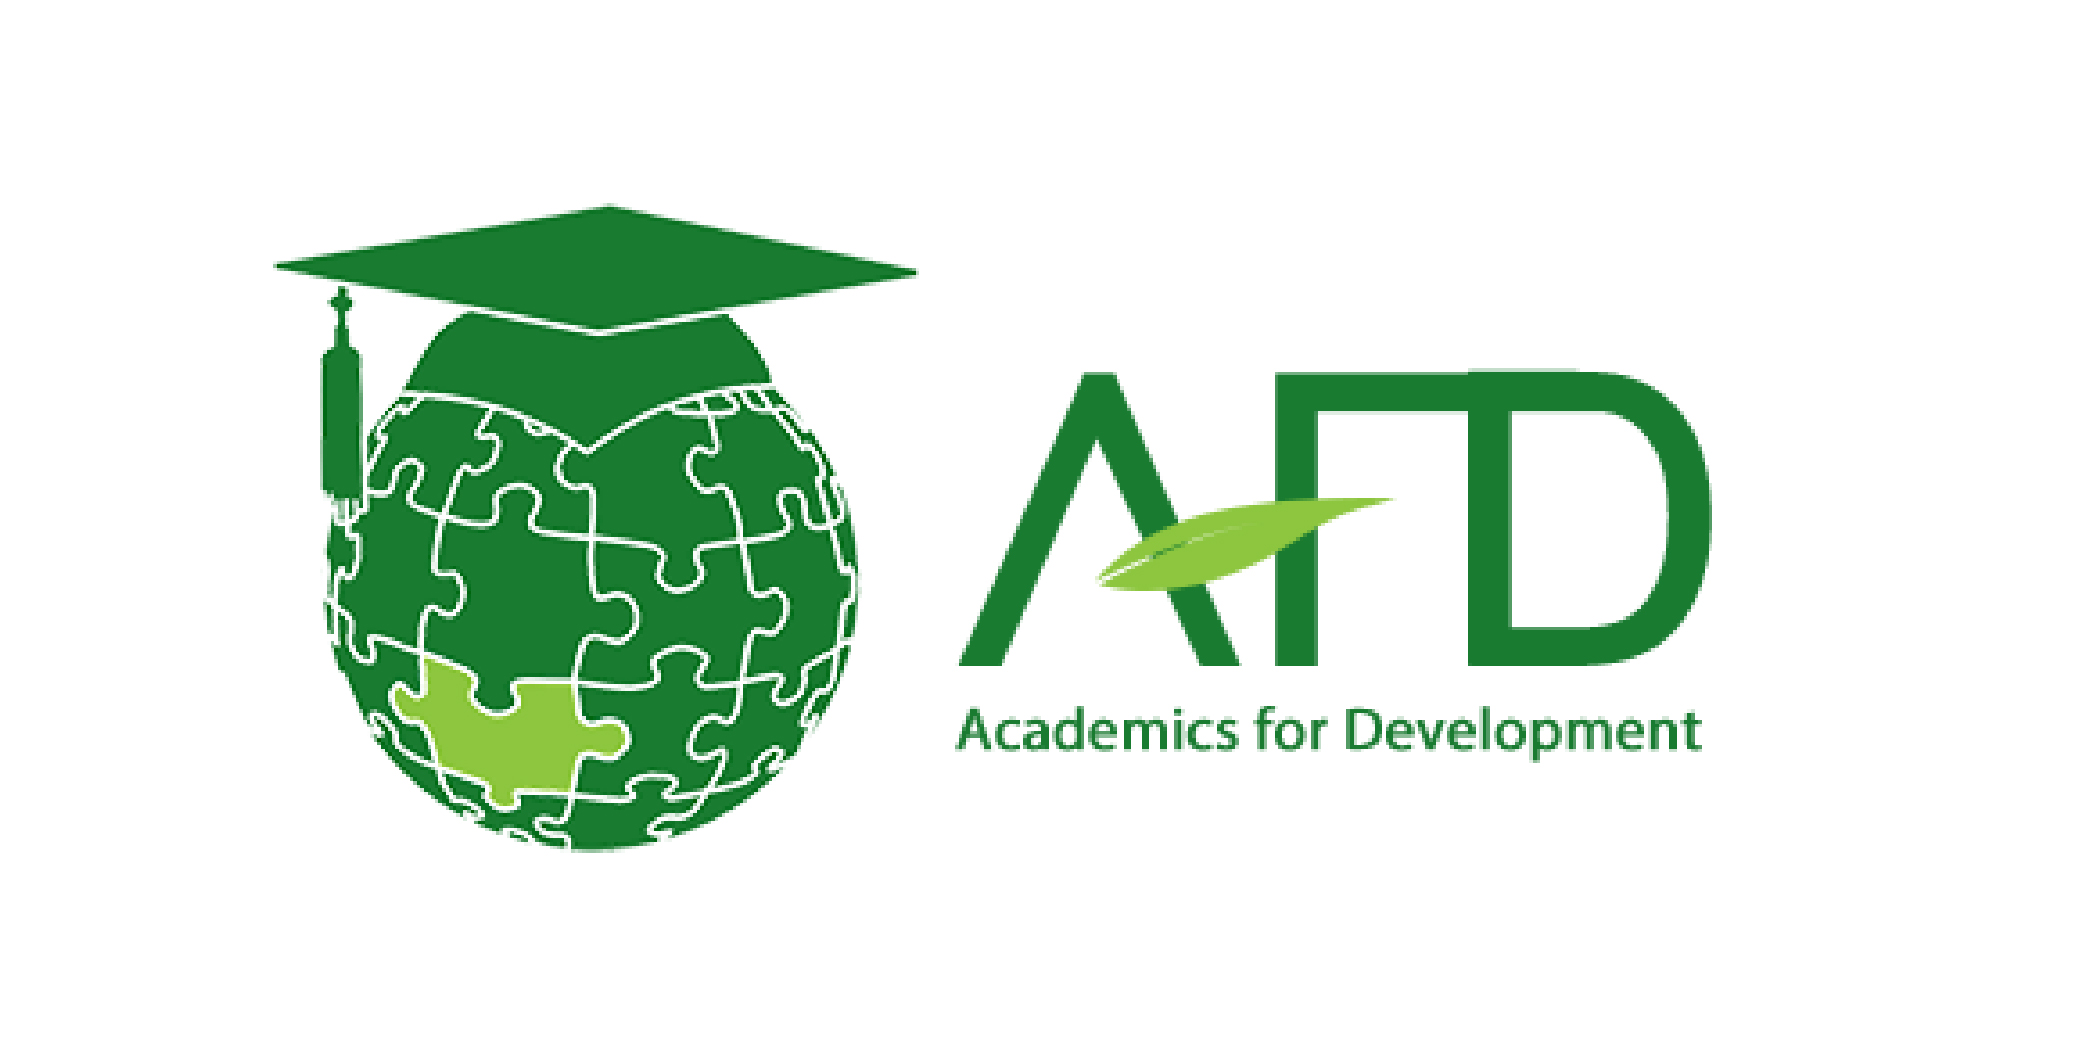 Academics for development